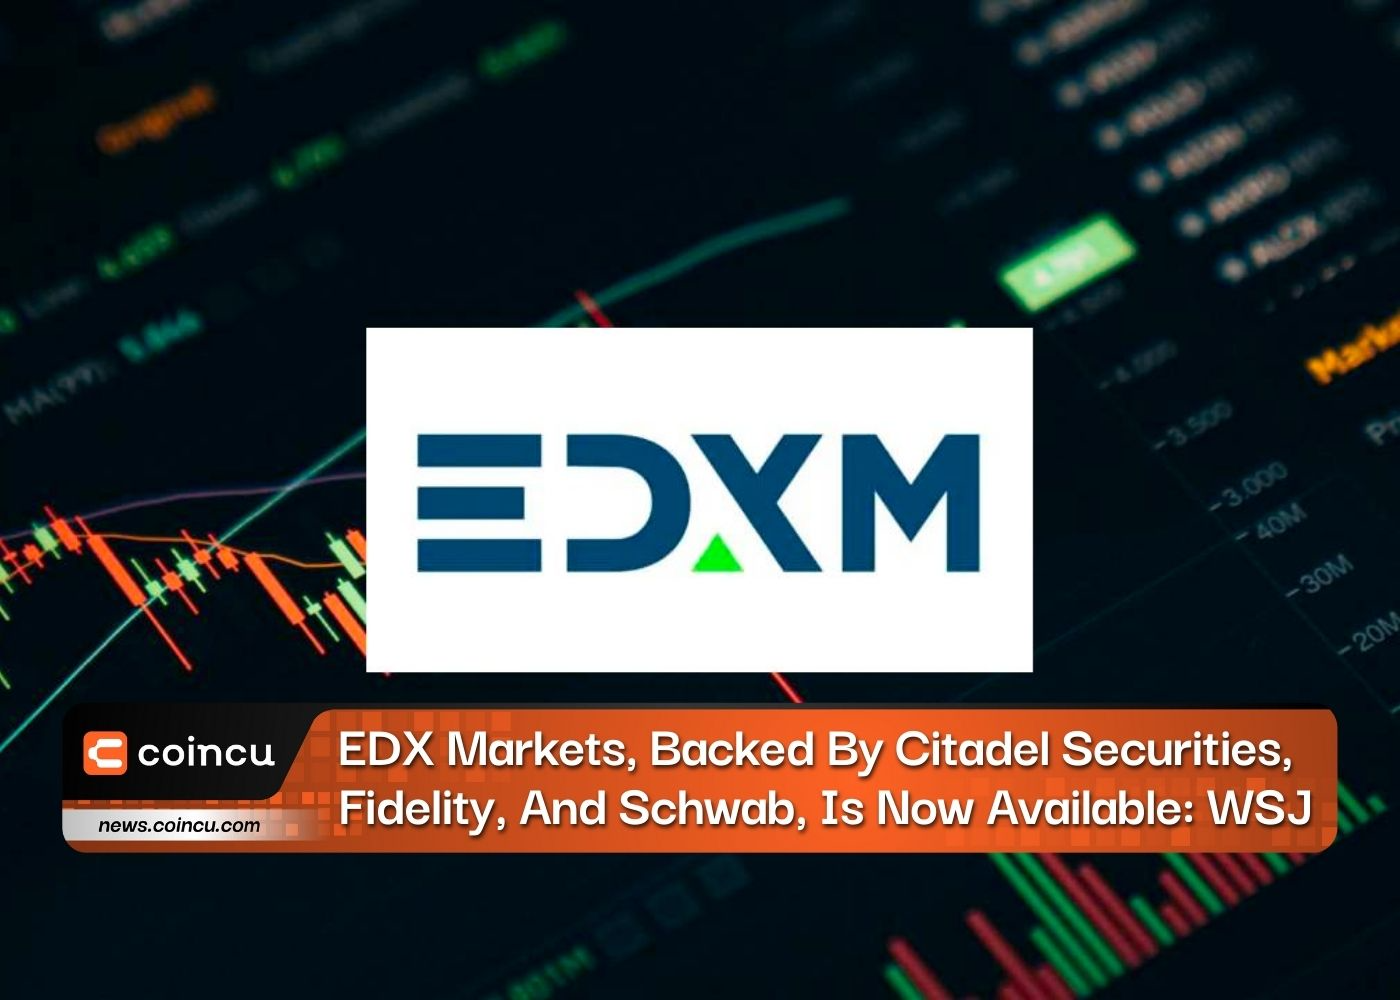 Citadel Securities, Fidelity ve Schwab Tarafından Desteklenen EDX Piyasaları Artık Kullanılabilir: WSJ